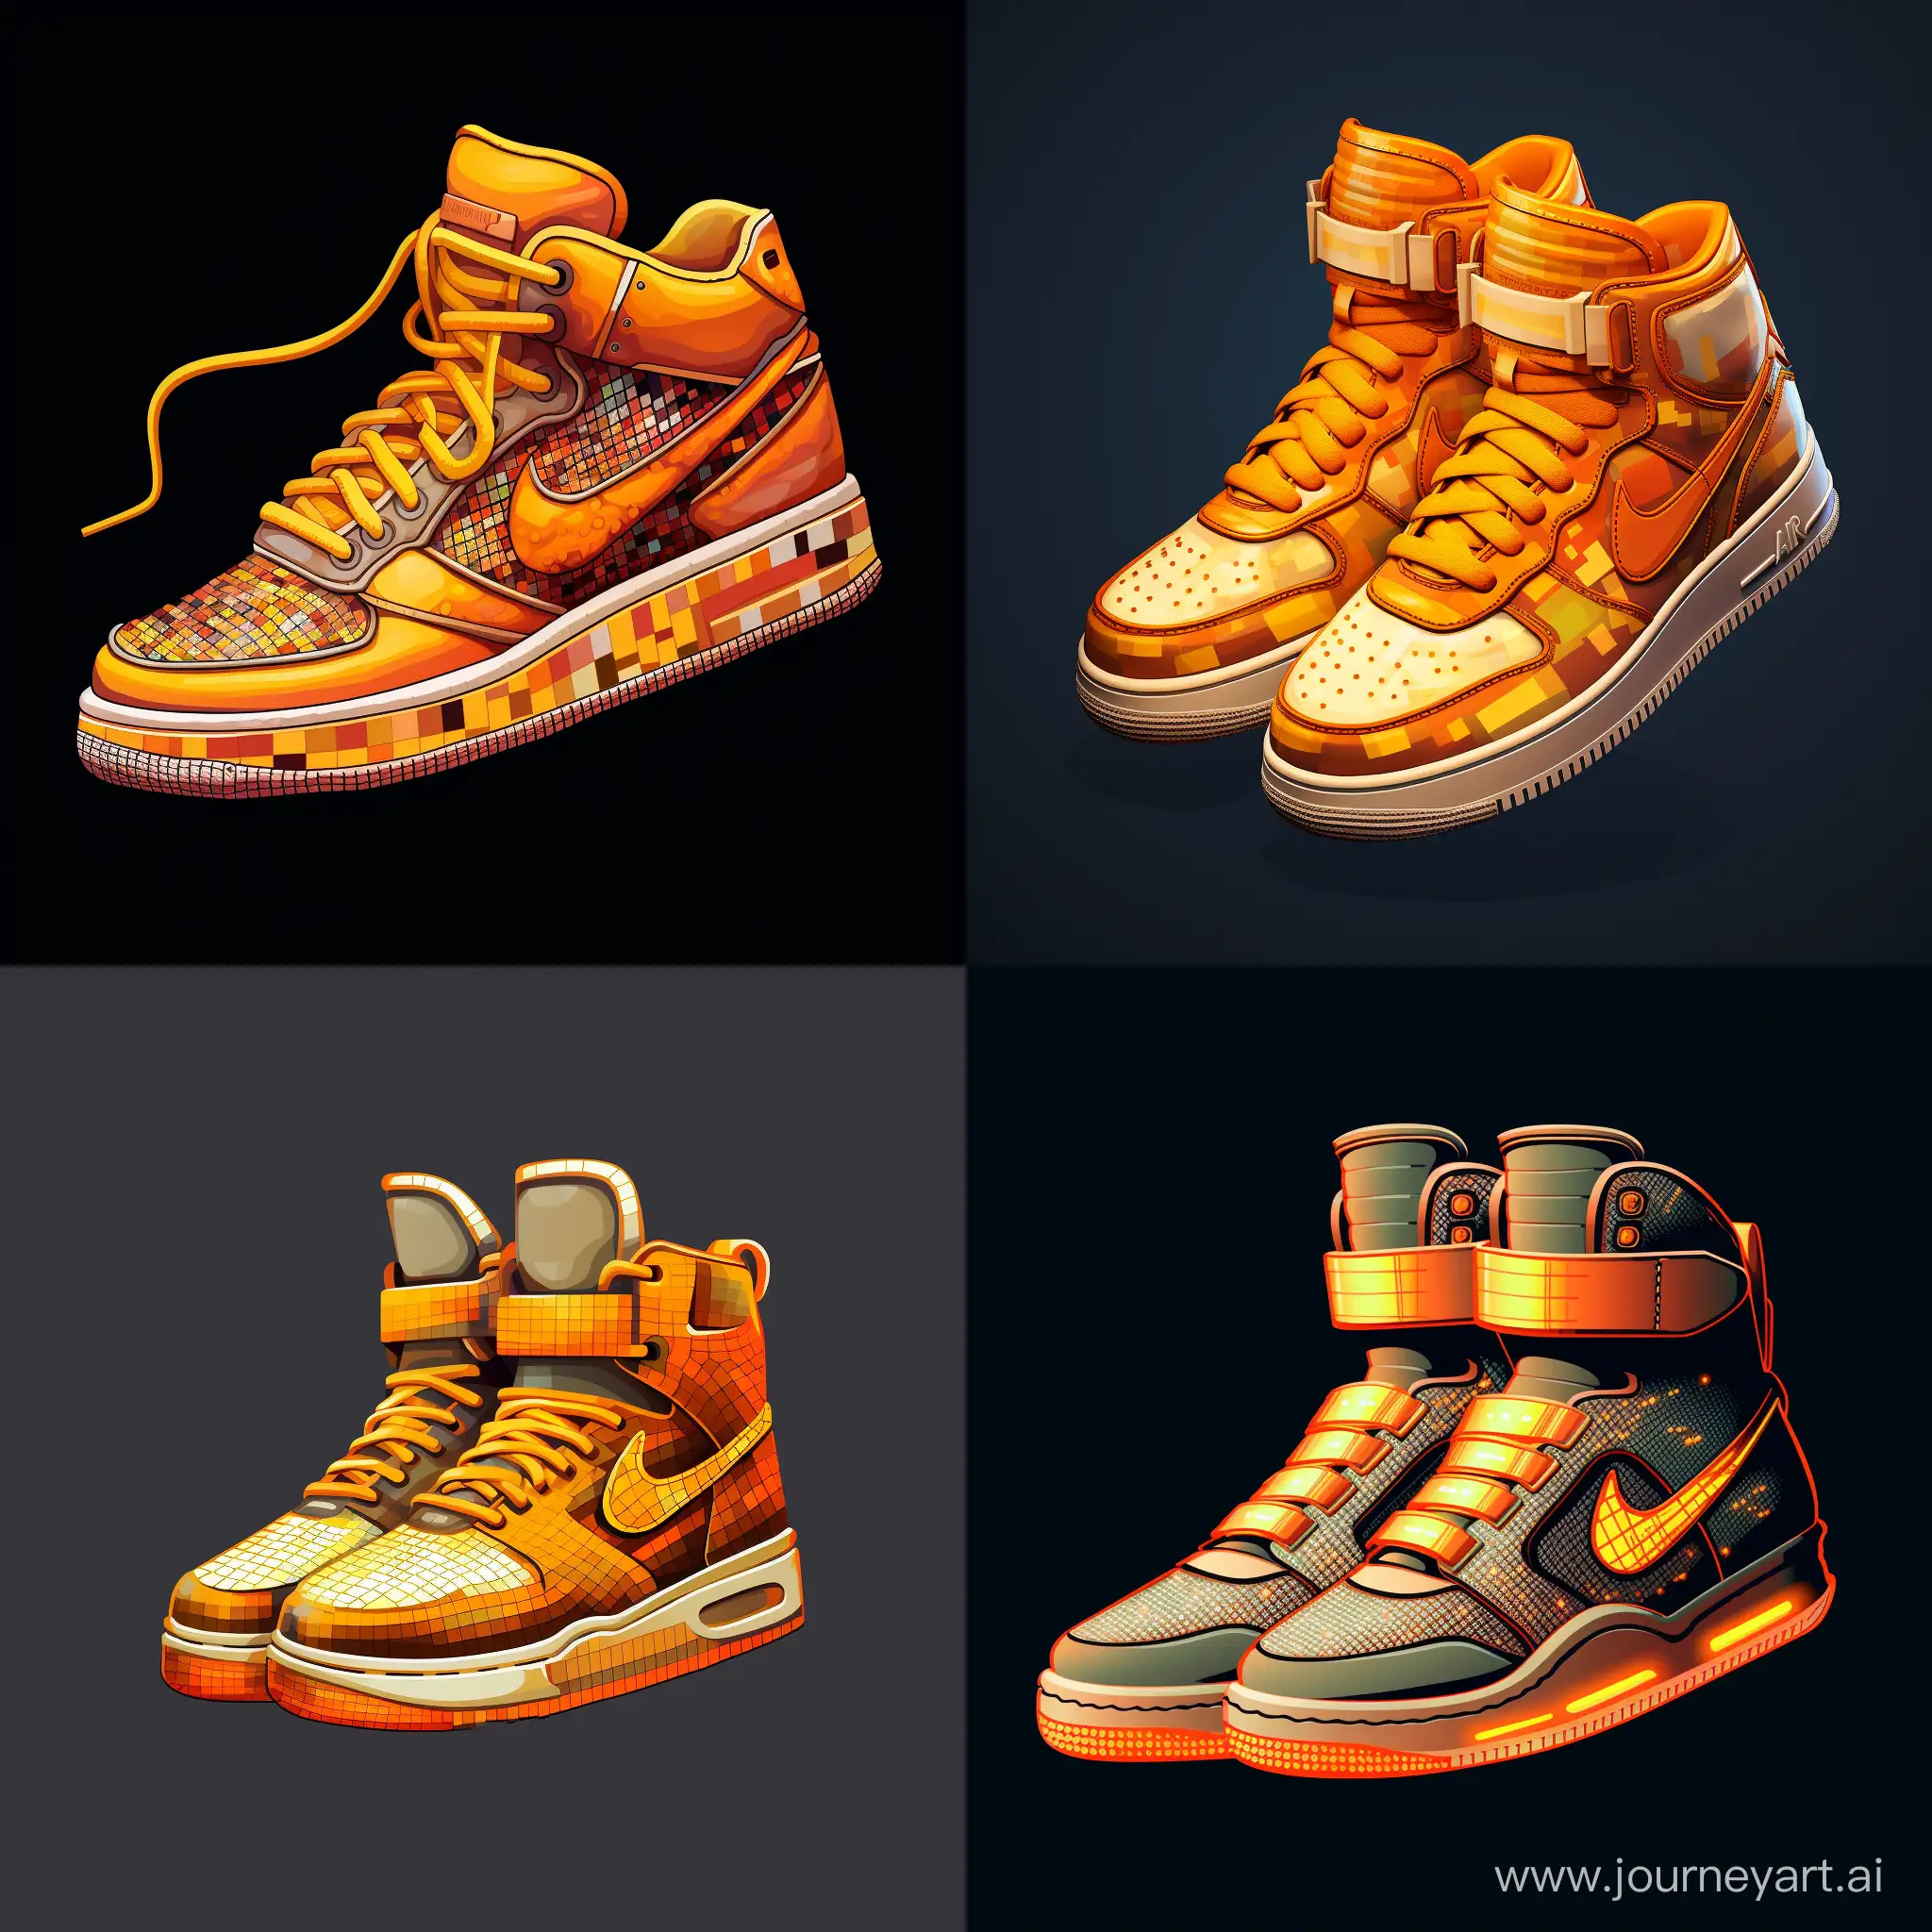 пиксель арт кроссовок, цвета оранжевый и желтый, кроссовки светятся. изображение из пикселей